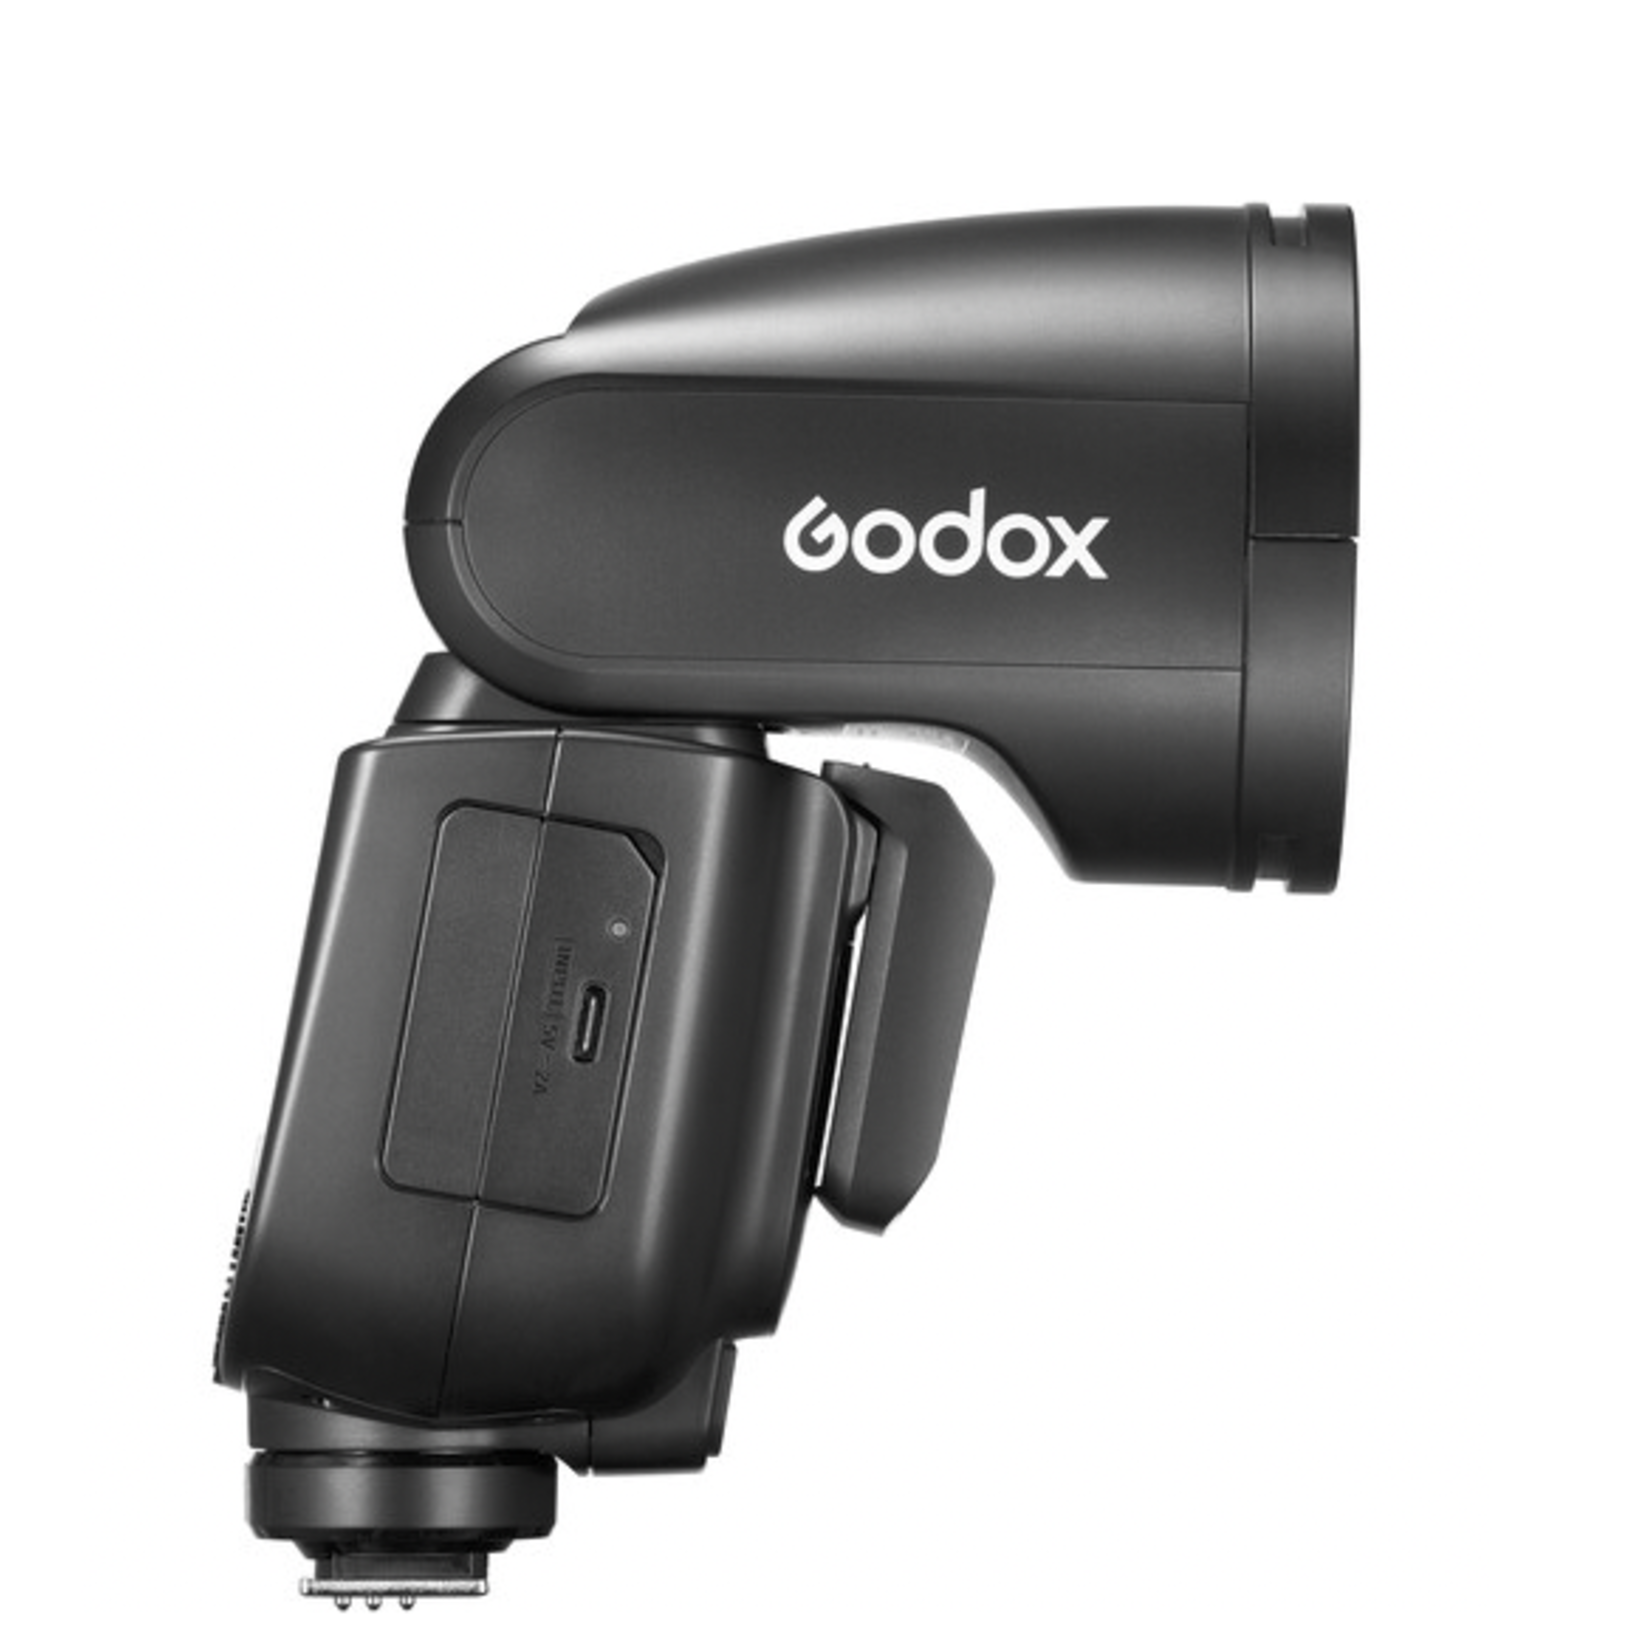 Godox Godox V1 Pro Flash